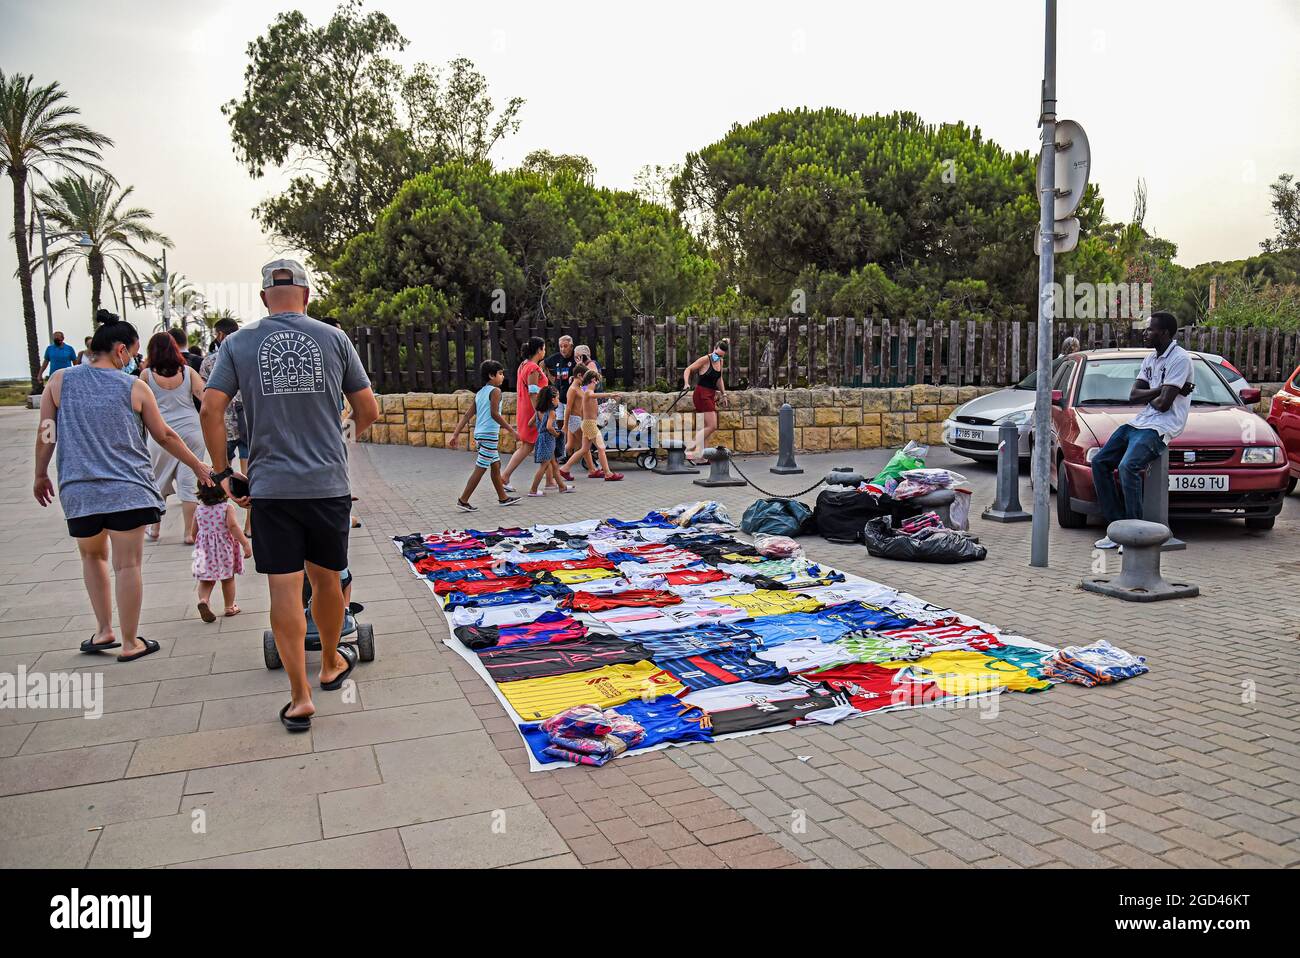 Vendrell, España. 05th de agosto de 2021. La gente camina delante de los puestos mantas el suelo cubiertas de productos ilegales a lo largo de Maritimo Street en Vendrell.